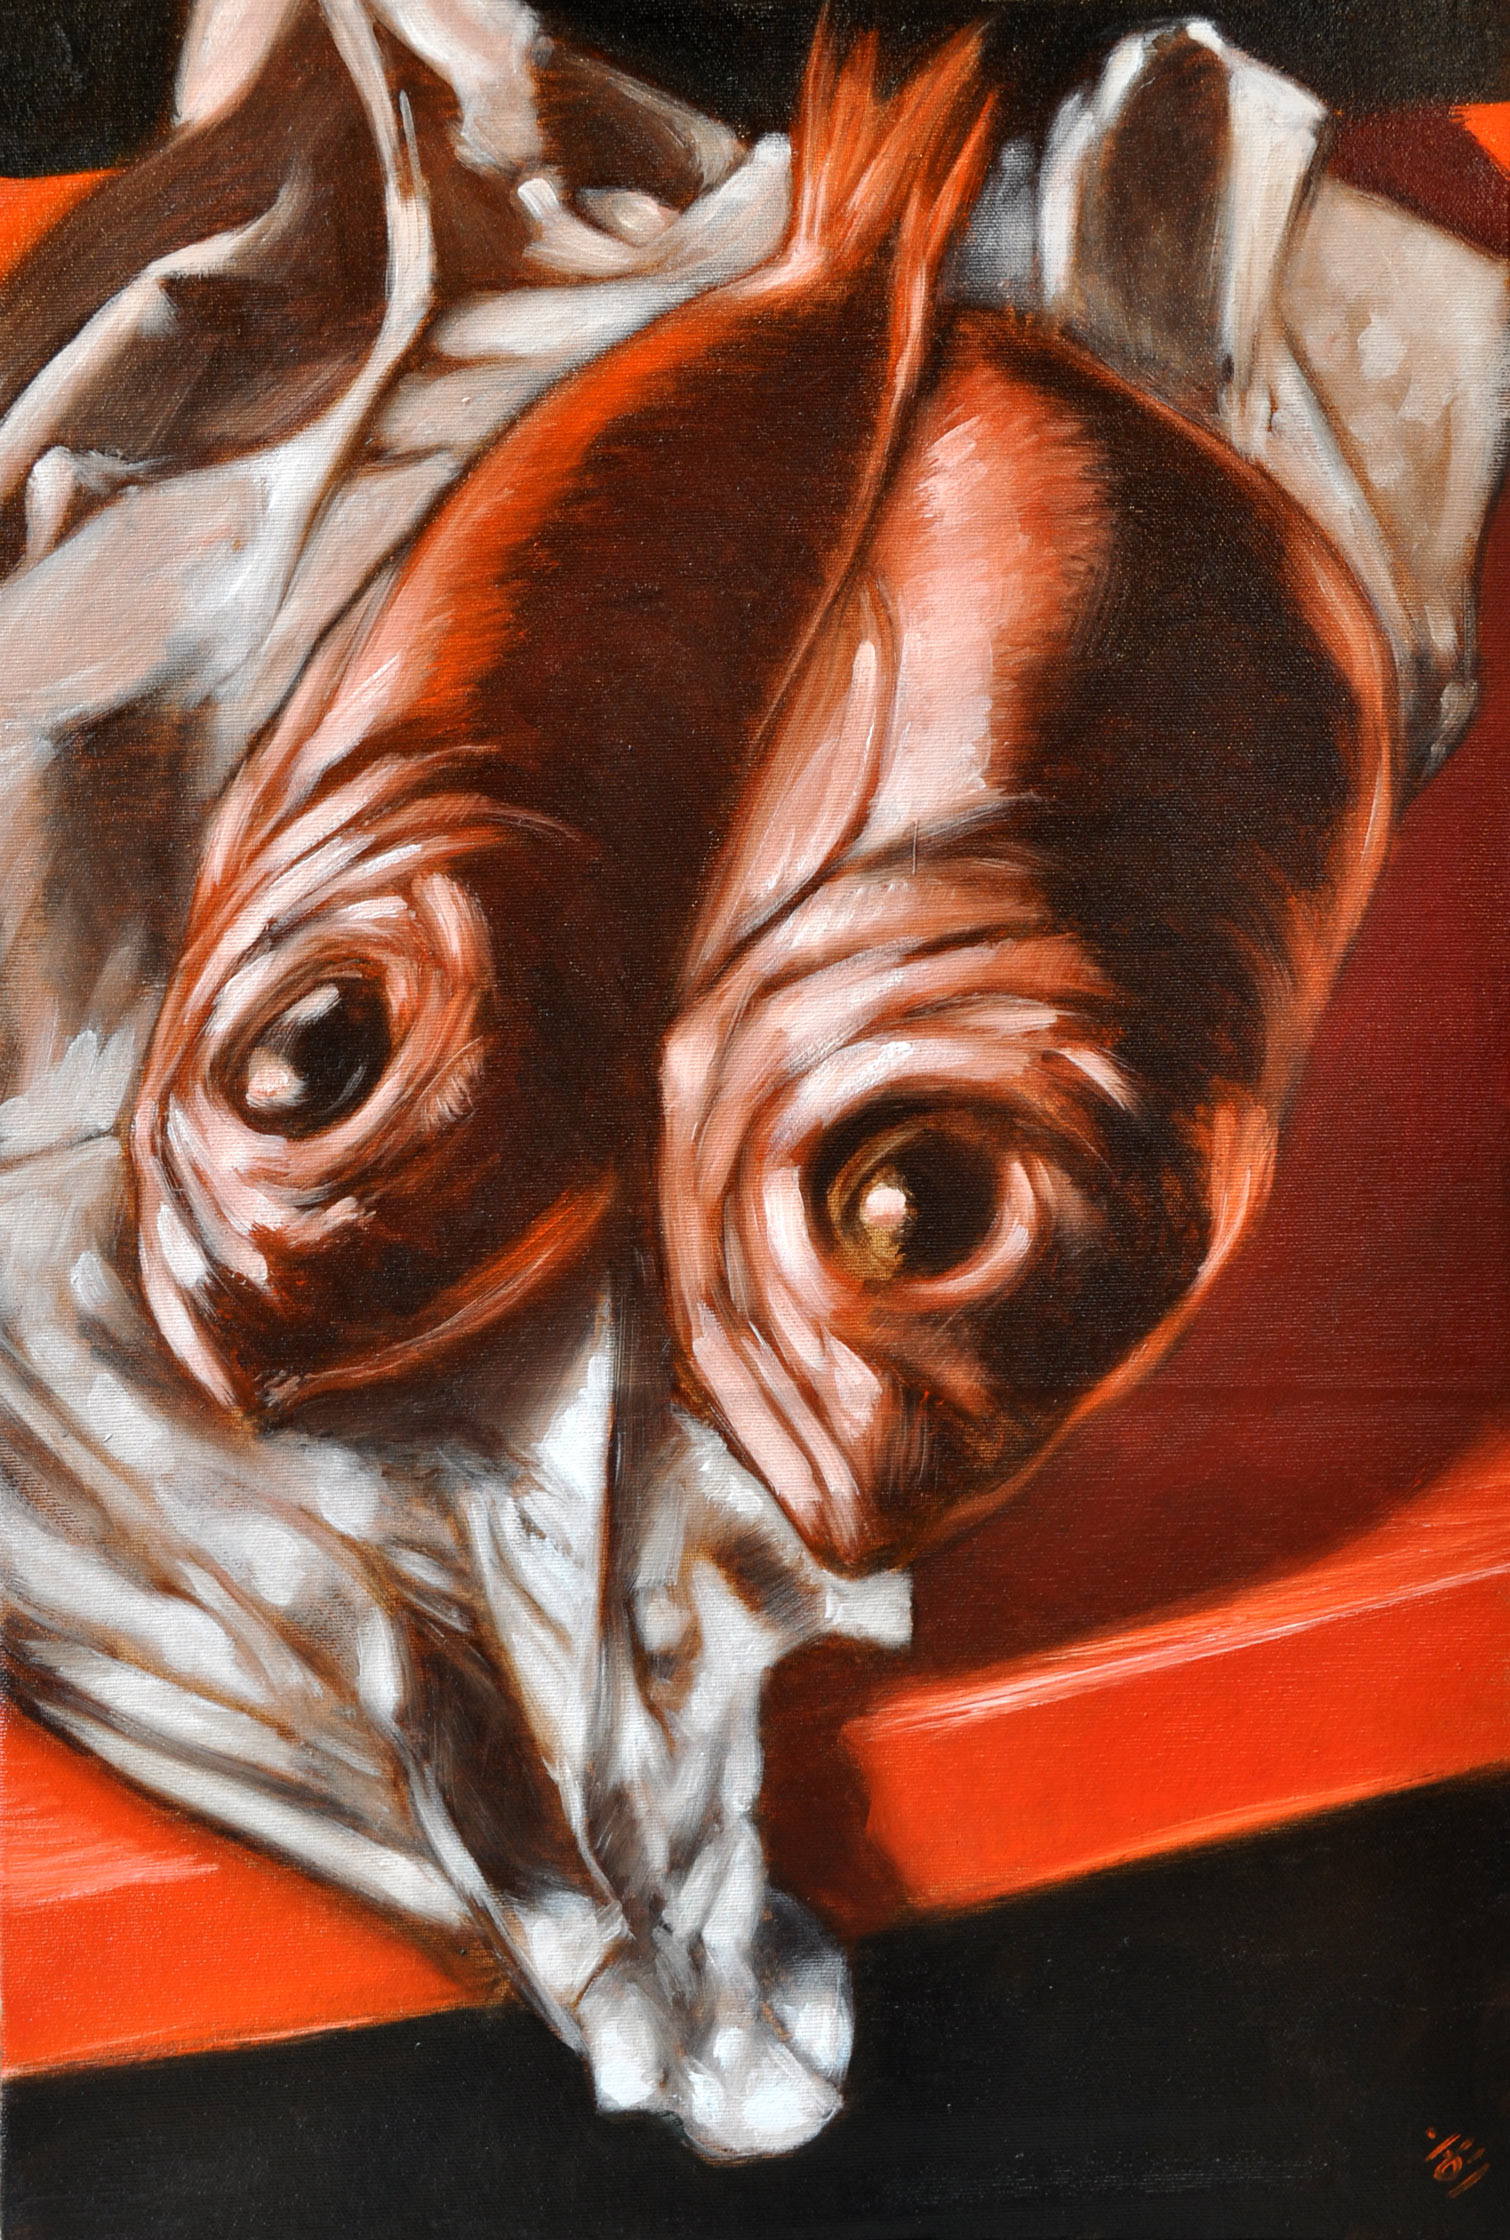 Deux poissons présentés la tête vers le bas du tableau dans un papier blanc froissé. La dominante du tableau est rouge, comme le coin de table sur laquelle ils sont posés.